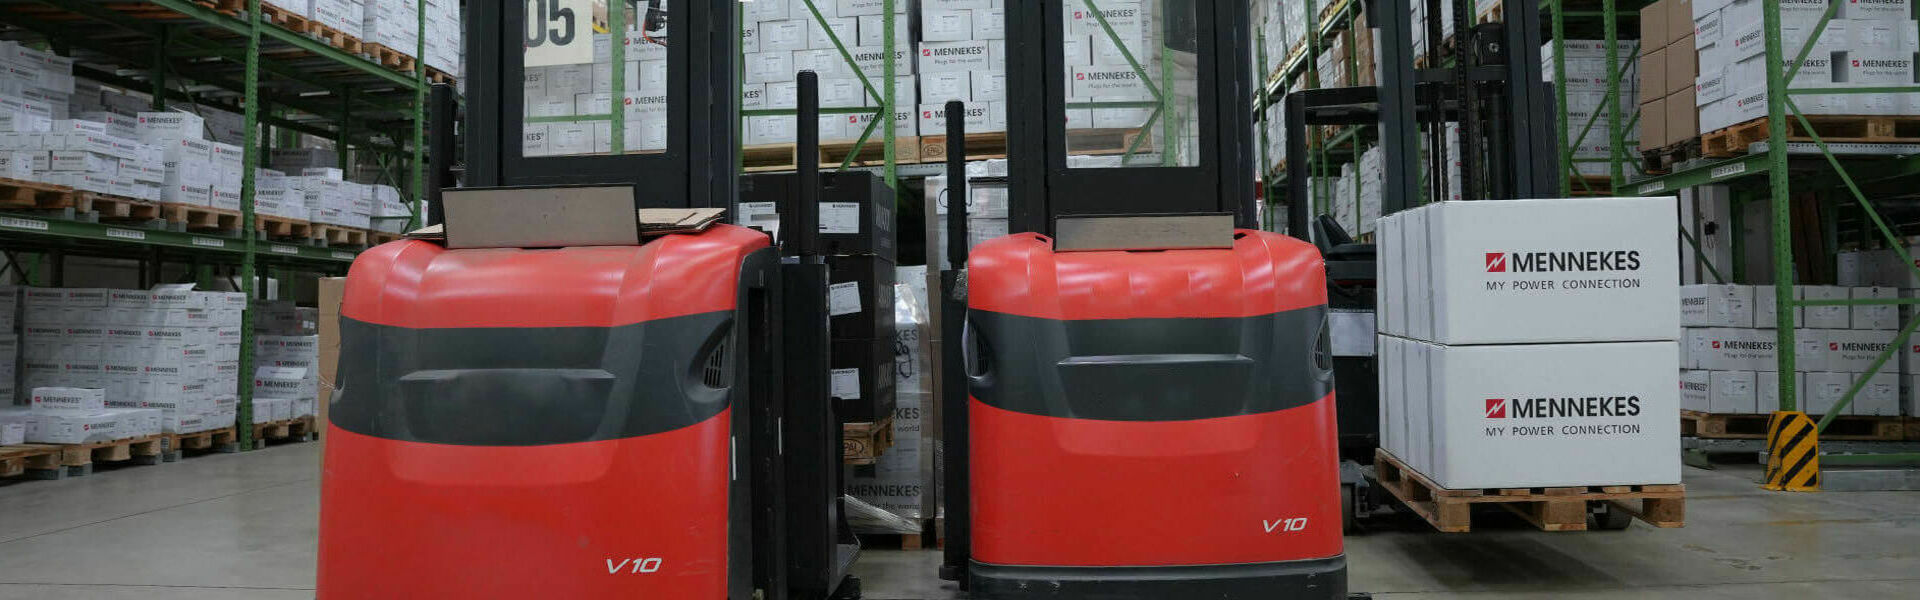 Zwei rote, elektische Hubwagen stehen in einem Lager vor verpackten MENNEKES Kartons